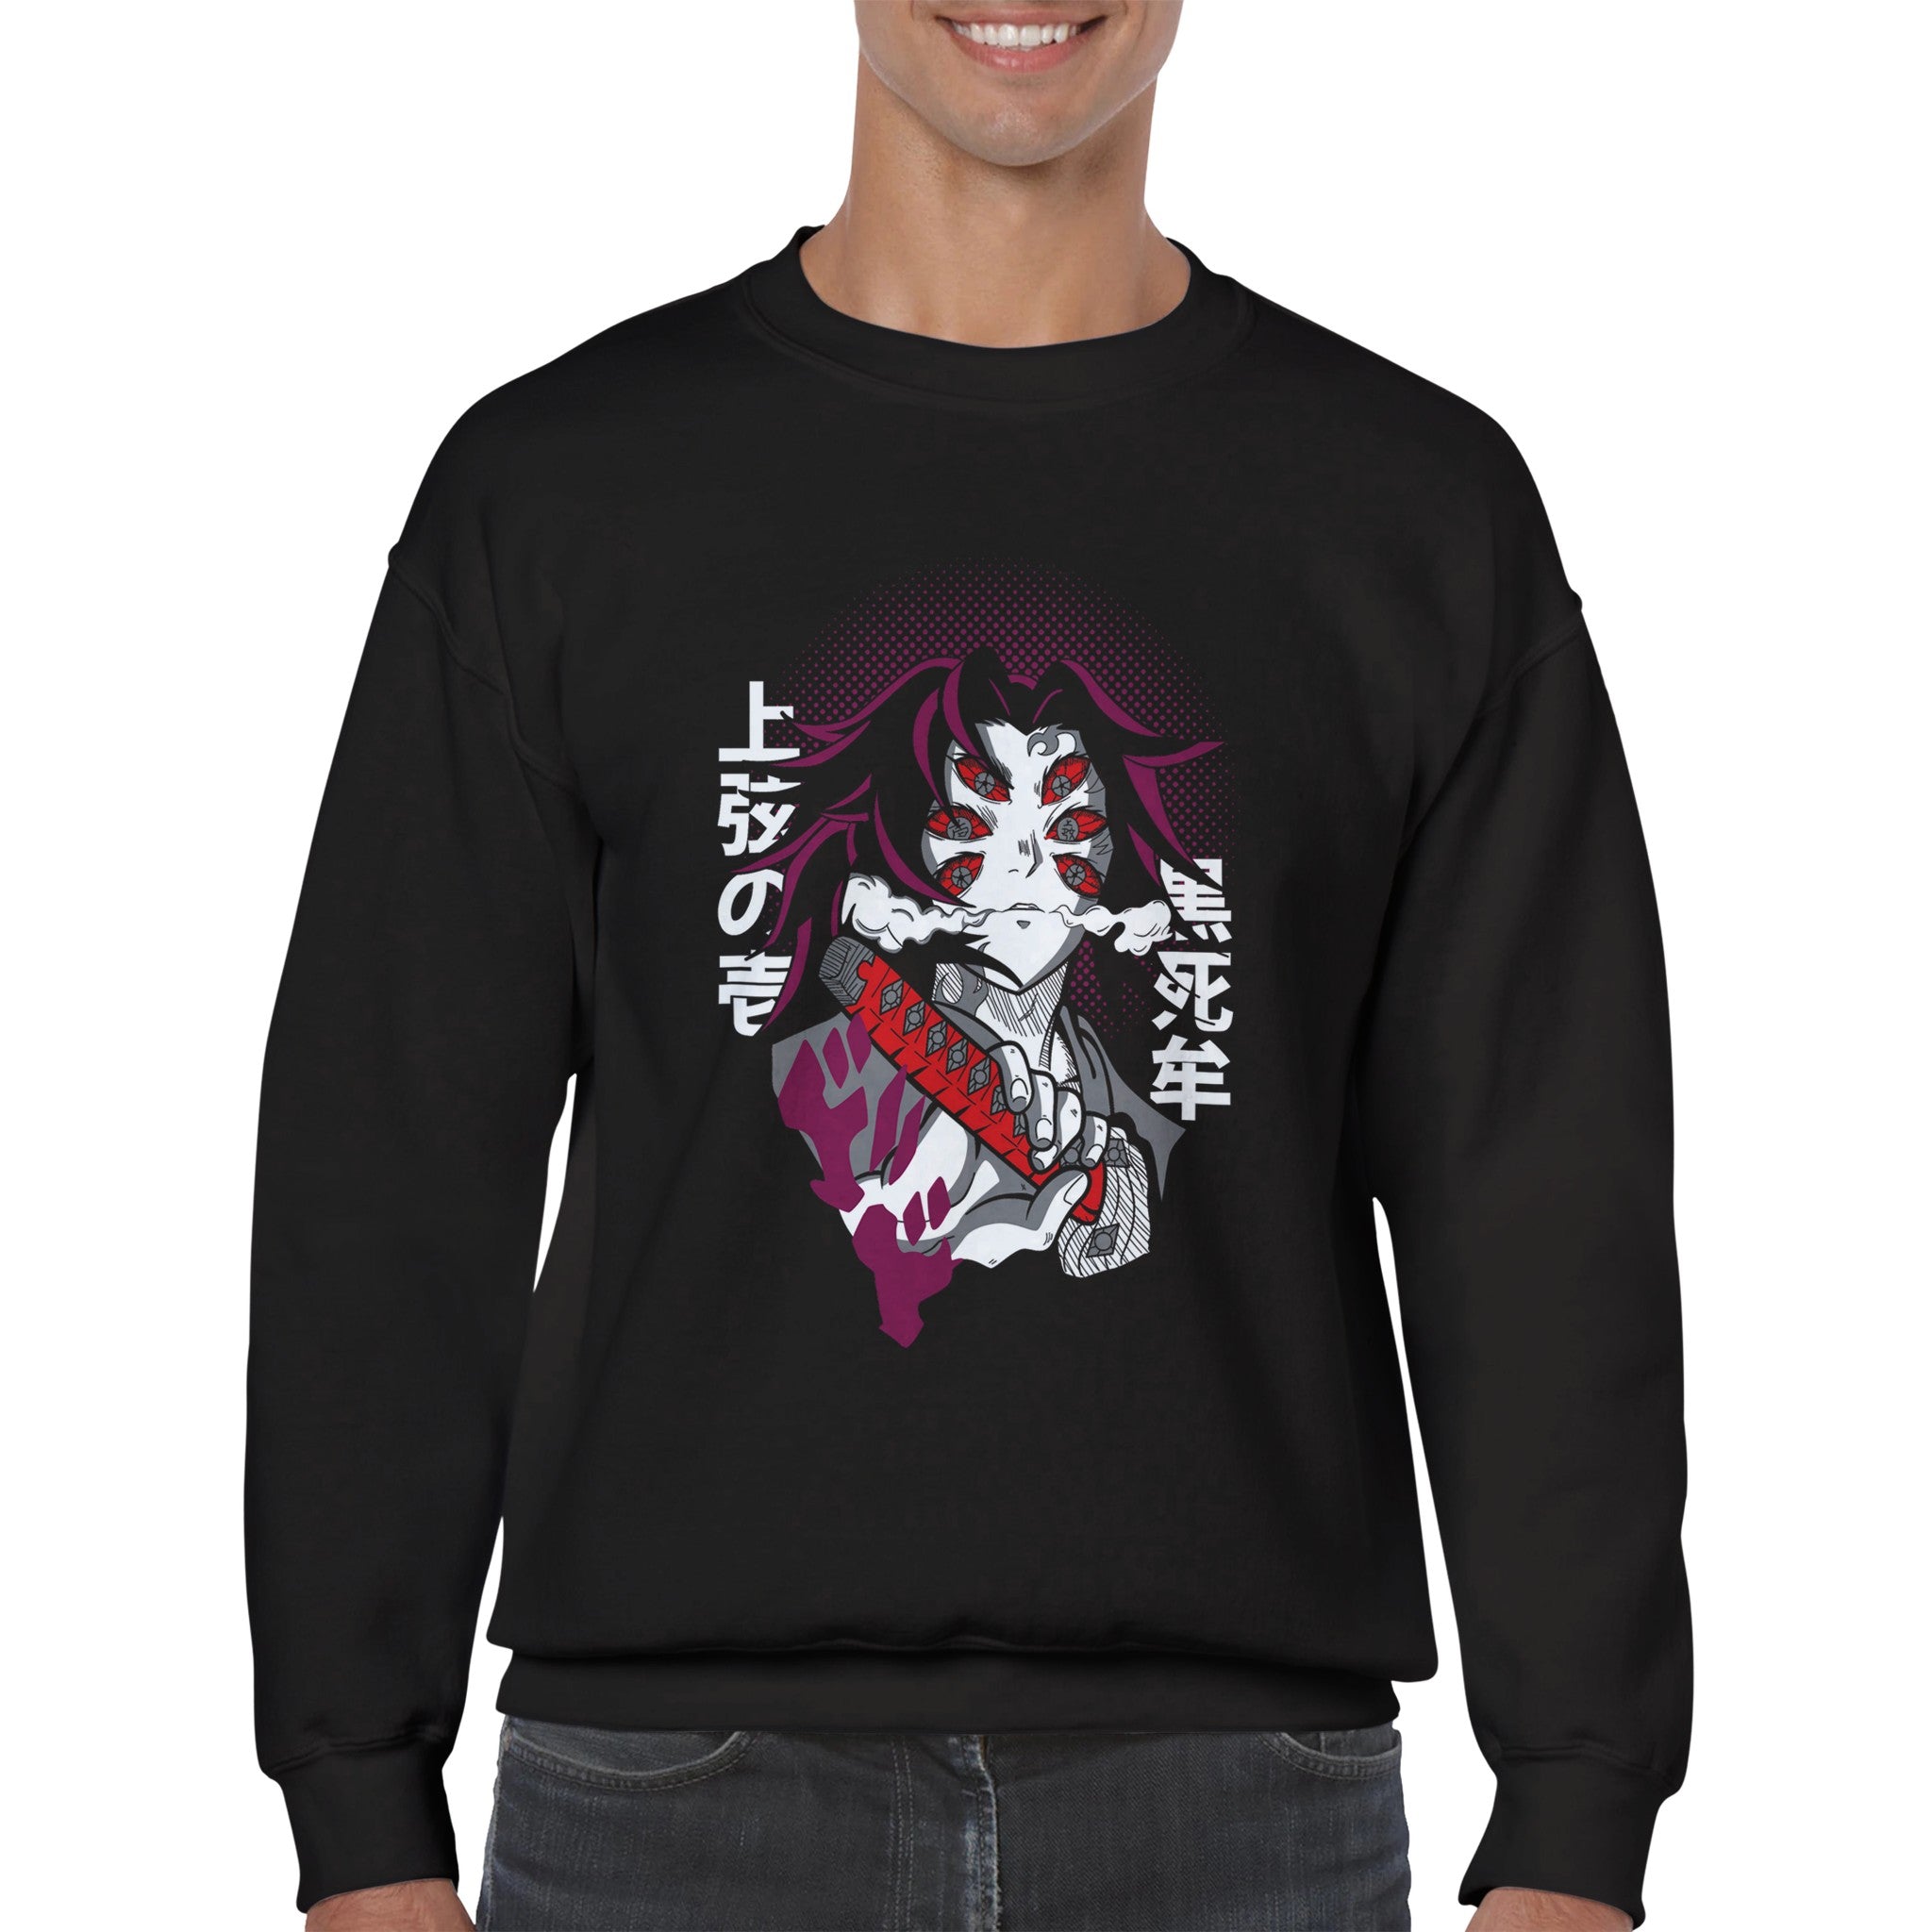 shop and buy demon slayer anime clothing Kokushibo sweatshirt/longsleeve/jumper